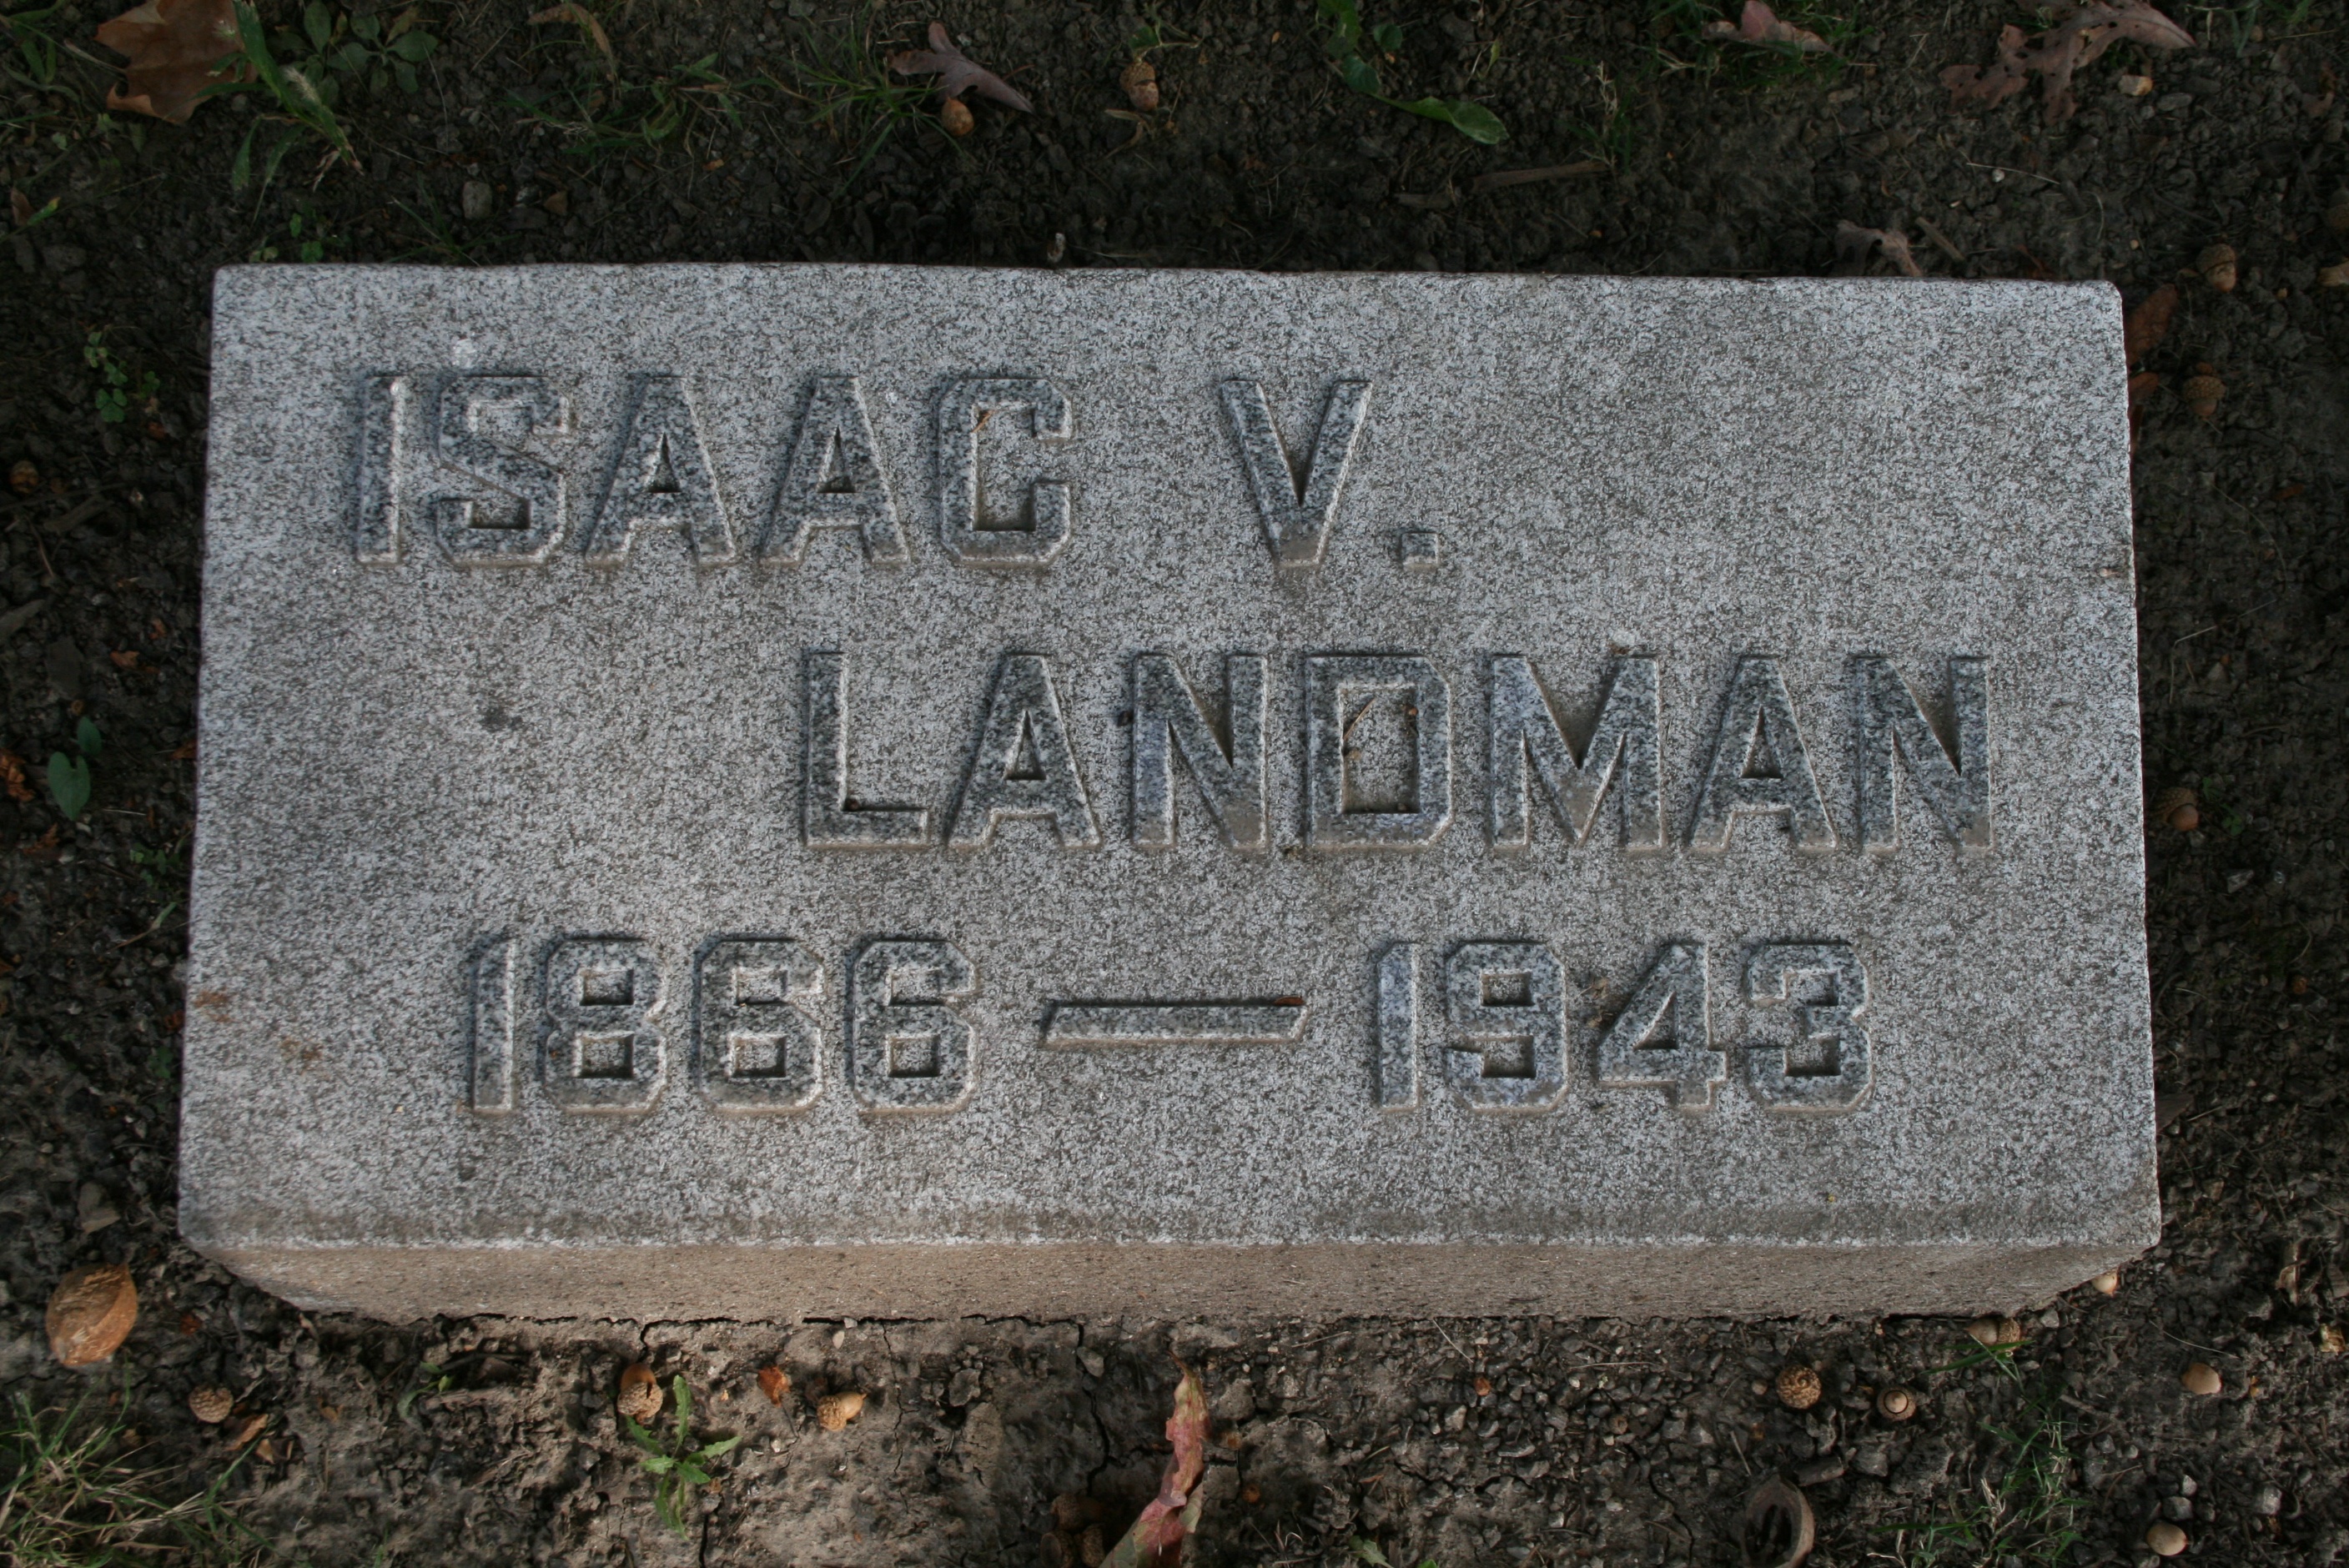 Landman, Isaac V.